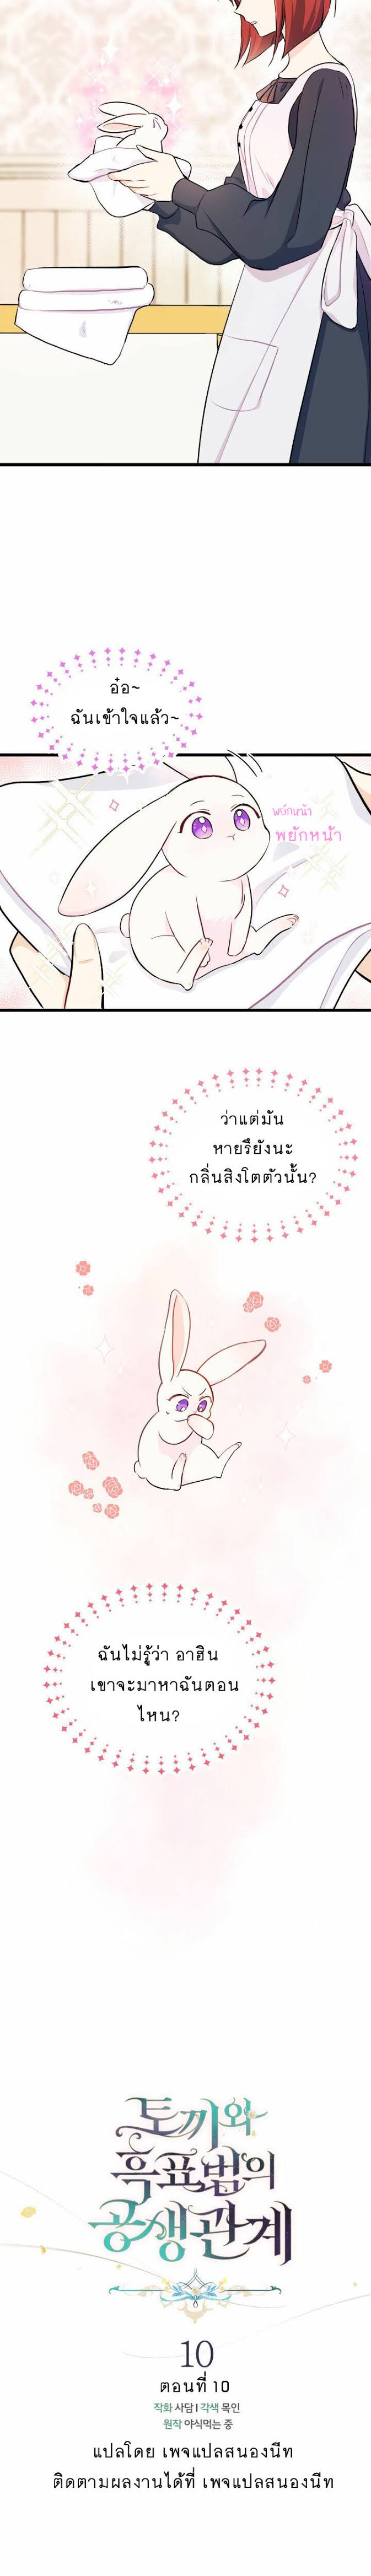 rabbit10 09